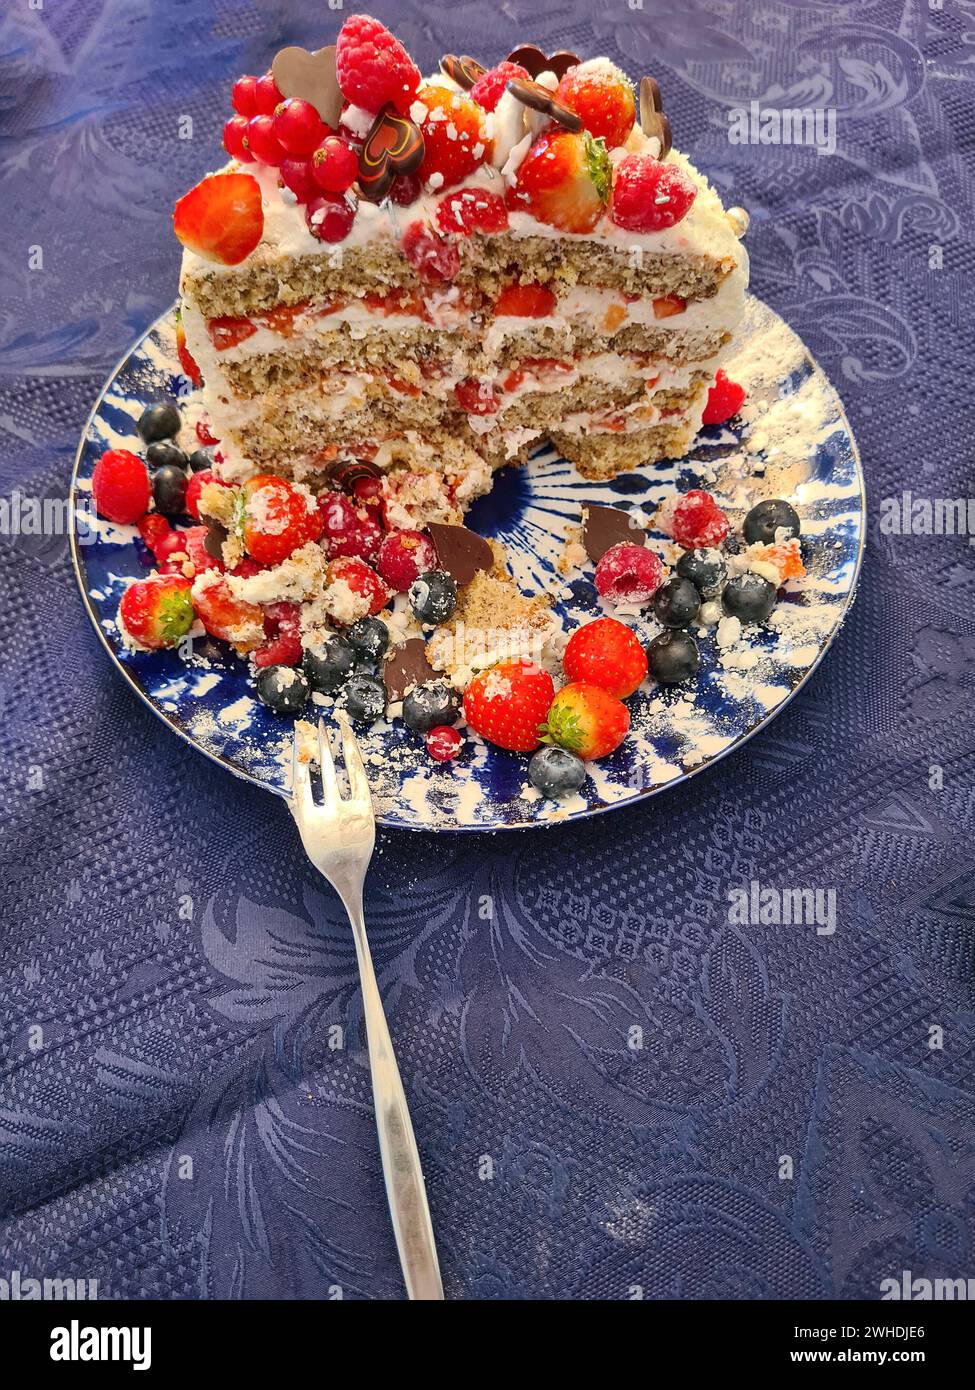 Una torta cremosa natalizia con frutta come fragole, lamponi, ribes e mirtilli mentre la decorazione viene tagliata e mostra la sezione trasversale della torta e i suoi strati individuali Foto Stock